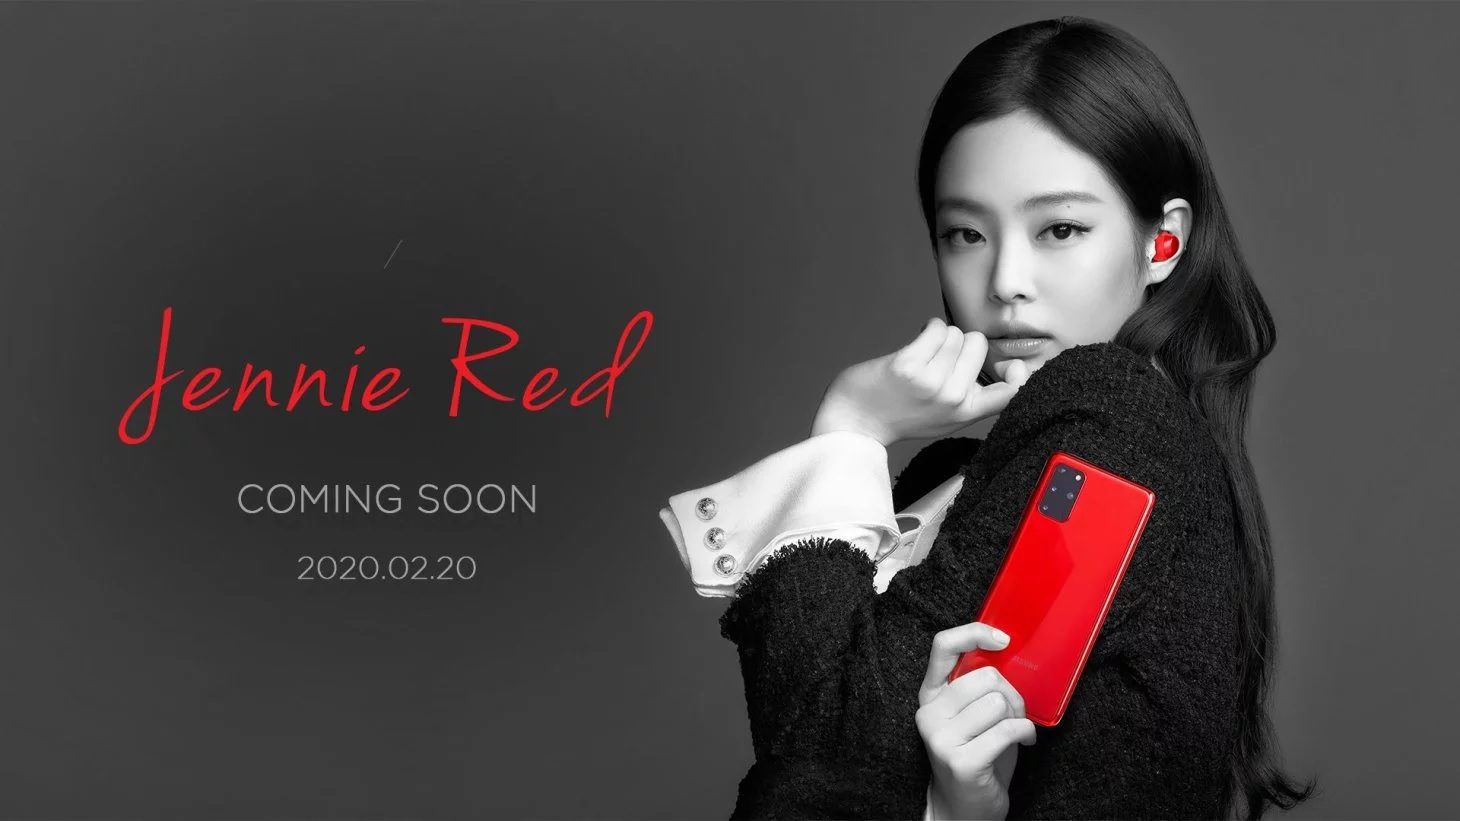 A Samsung egy Blackpink márkájú Jenny Red Samsung Galaxy S20 + telefont és Galaxy Buds + csomagot értékesít